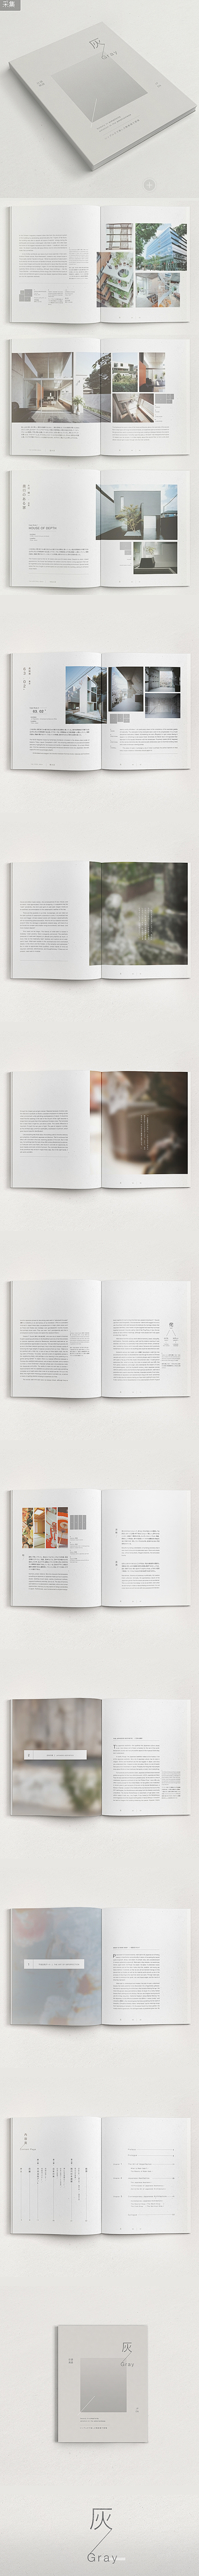 日本现代-灰/Gray建筑书籍宣传册设计...